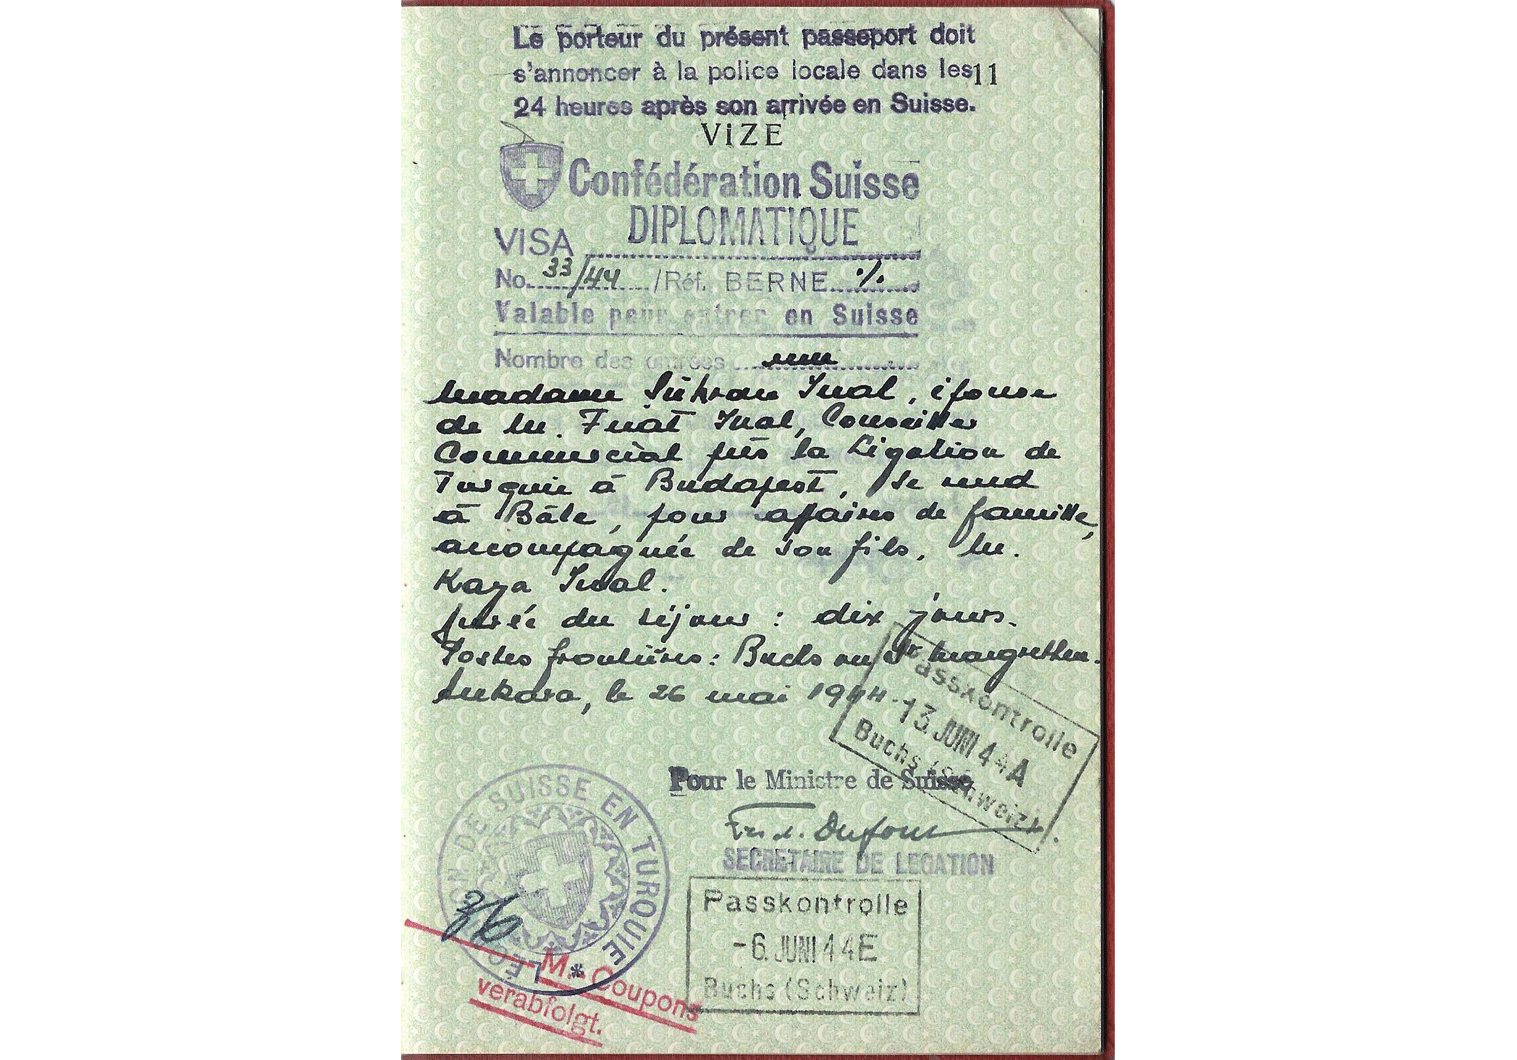 WW2 Diplomatic visa.